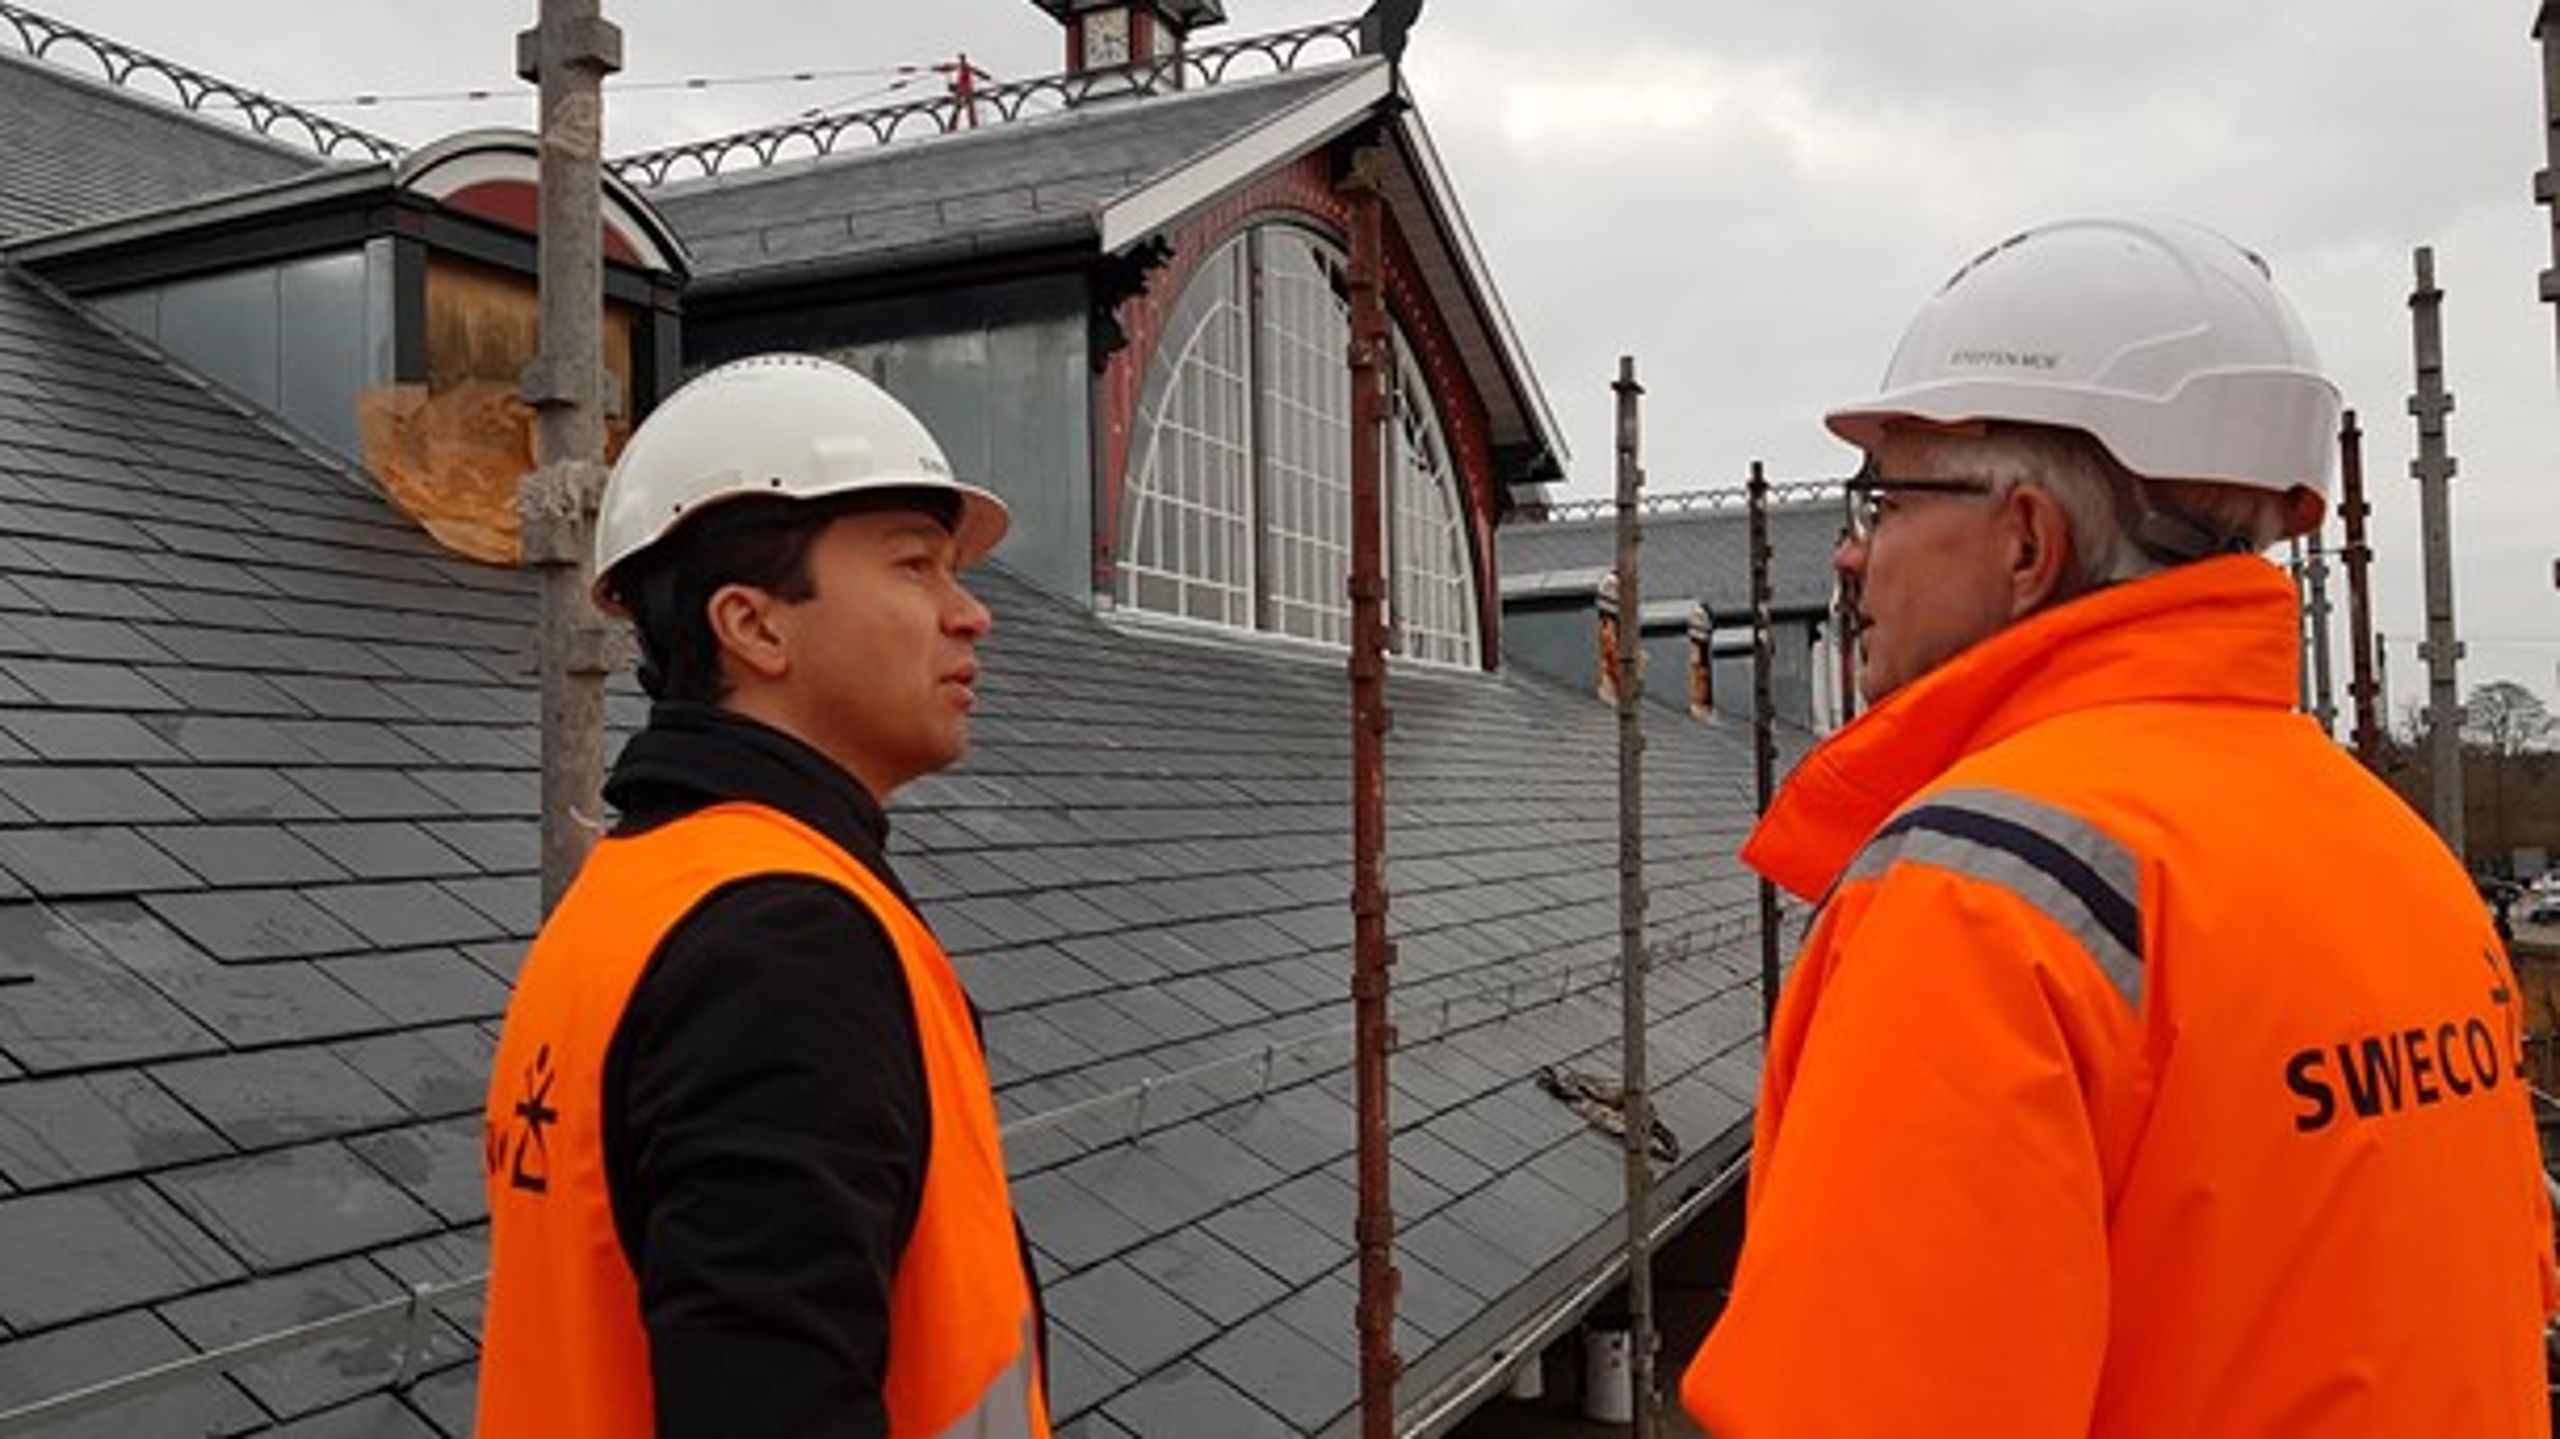 Direktør Dariush Rezai fra rådgivningsvirksomheden Sweco (tv) og projektdirektør Steffen Moe (th) diskuterer renoveringen af Østerport Station i København, som Sweco er rådgiver på.&nbsp;